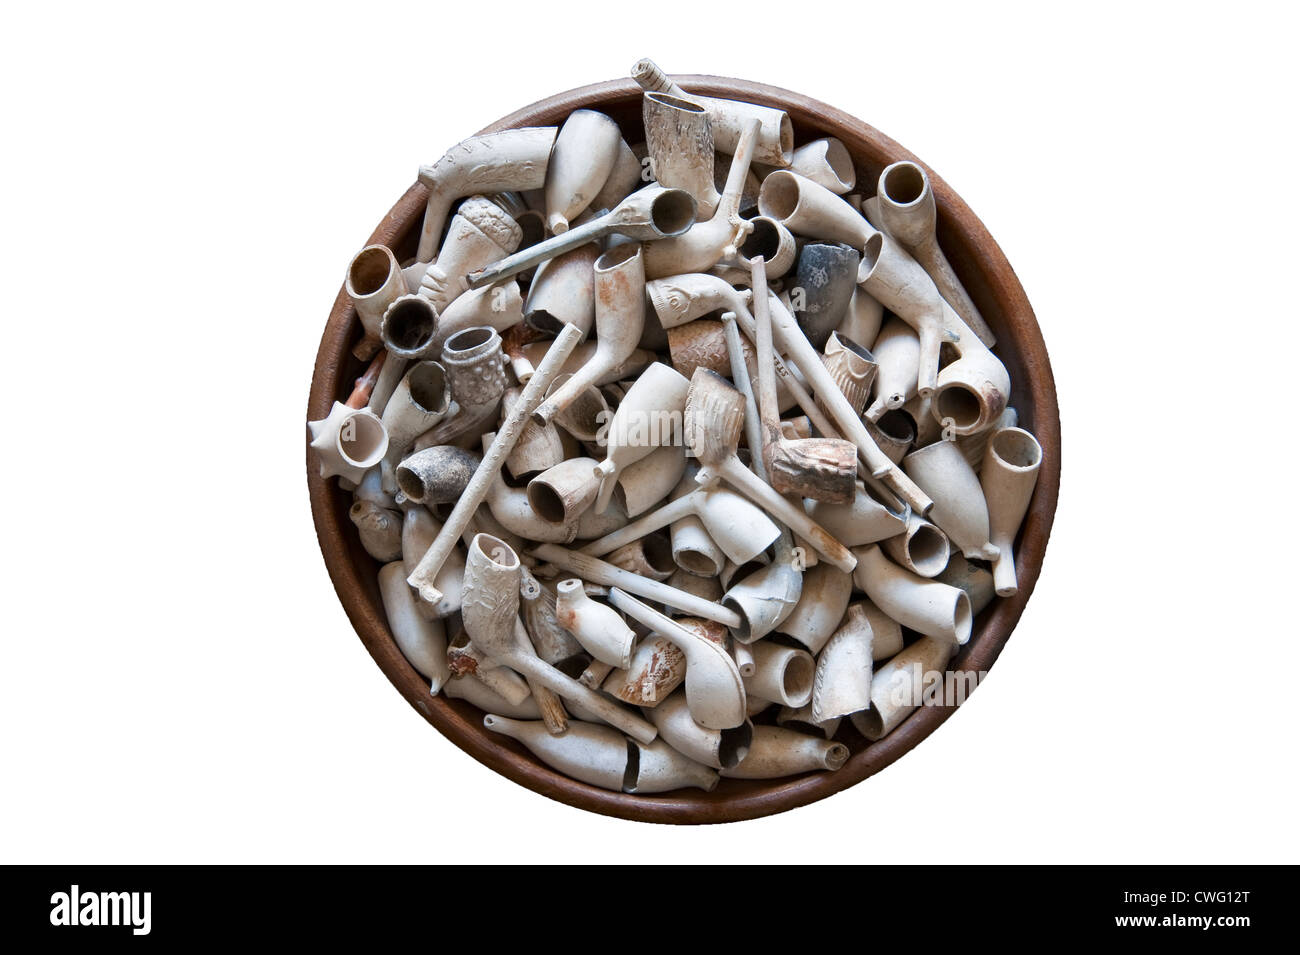 Une collection de vieilles pipes de tabac en argile trouvée à marée basse dans la boue de la Tamise à Londres, au Royaume-Uni, tout en larguant Banque D'Images